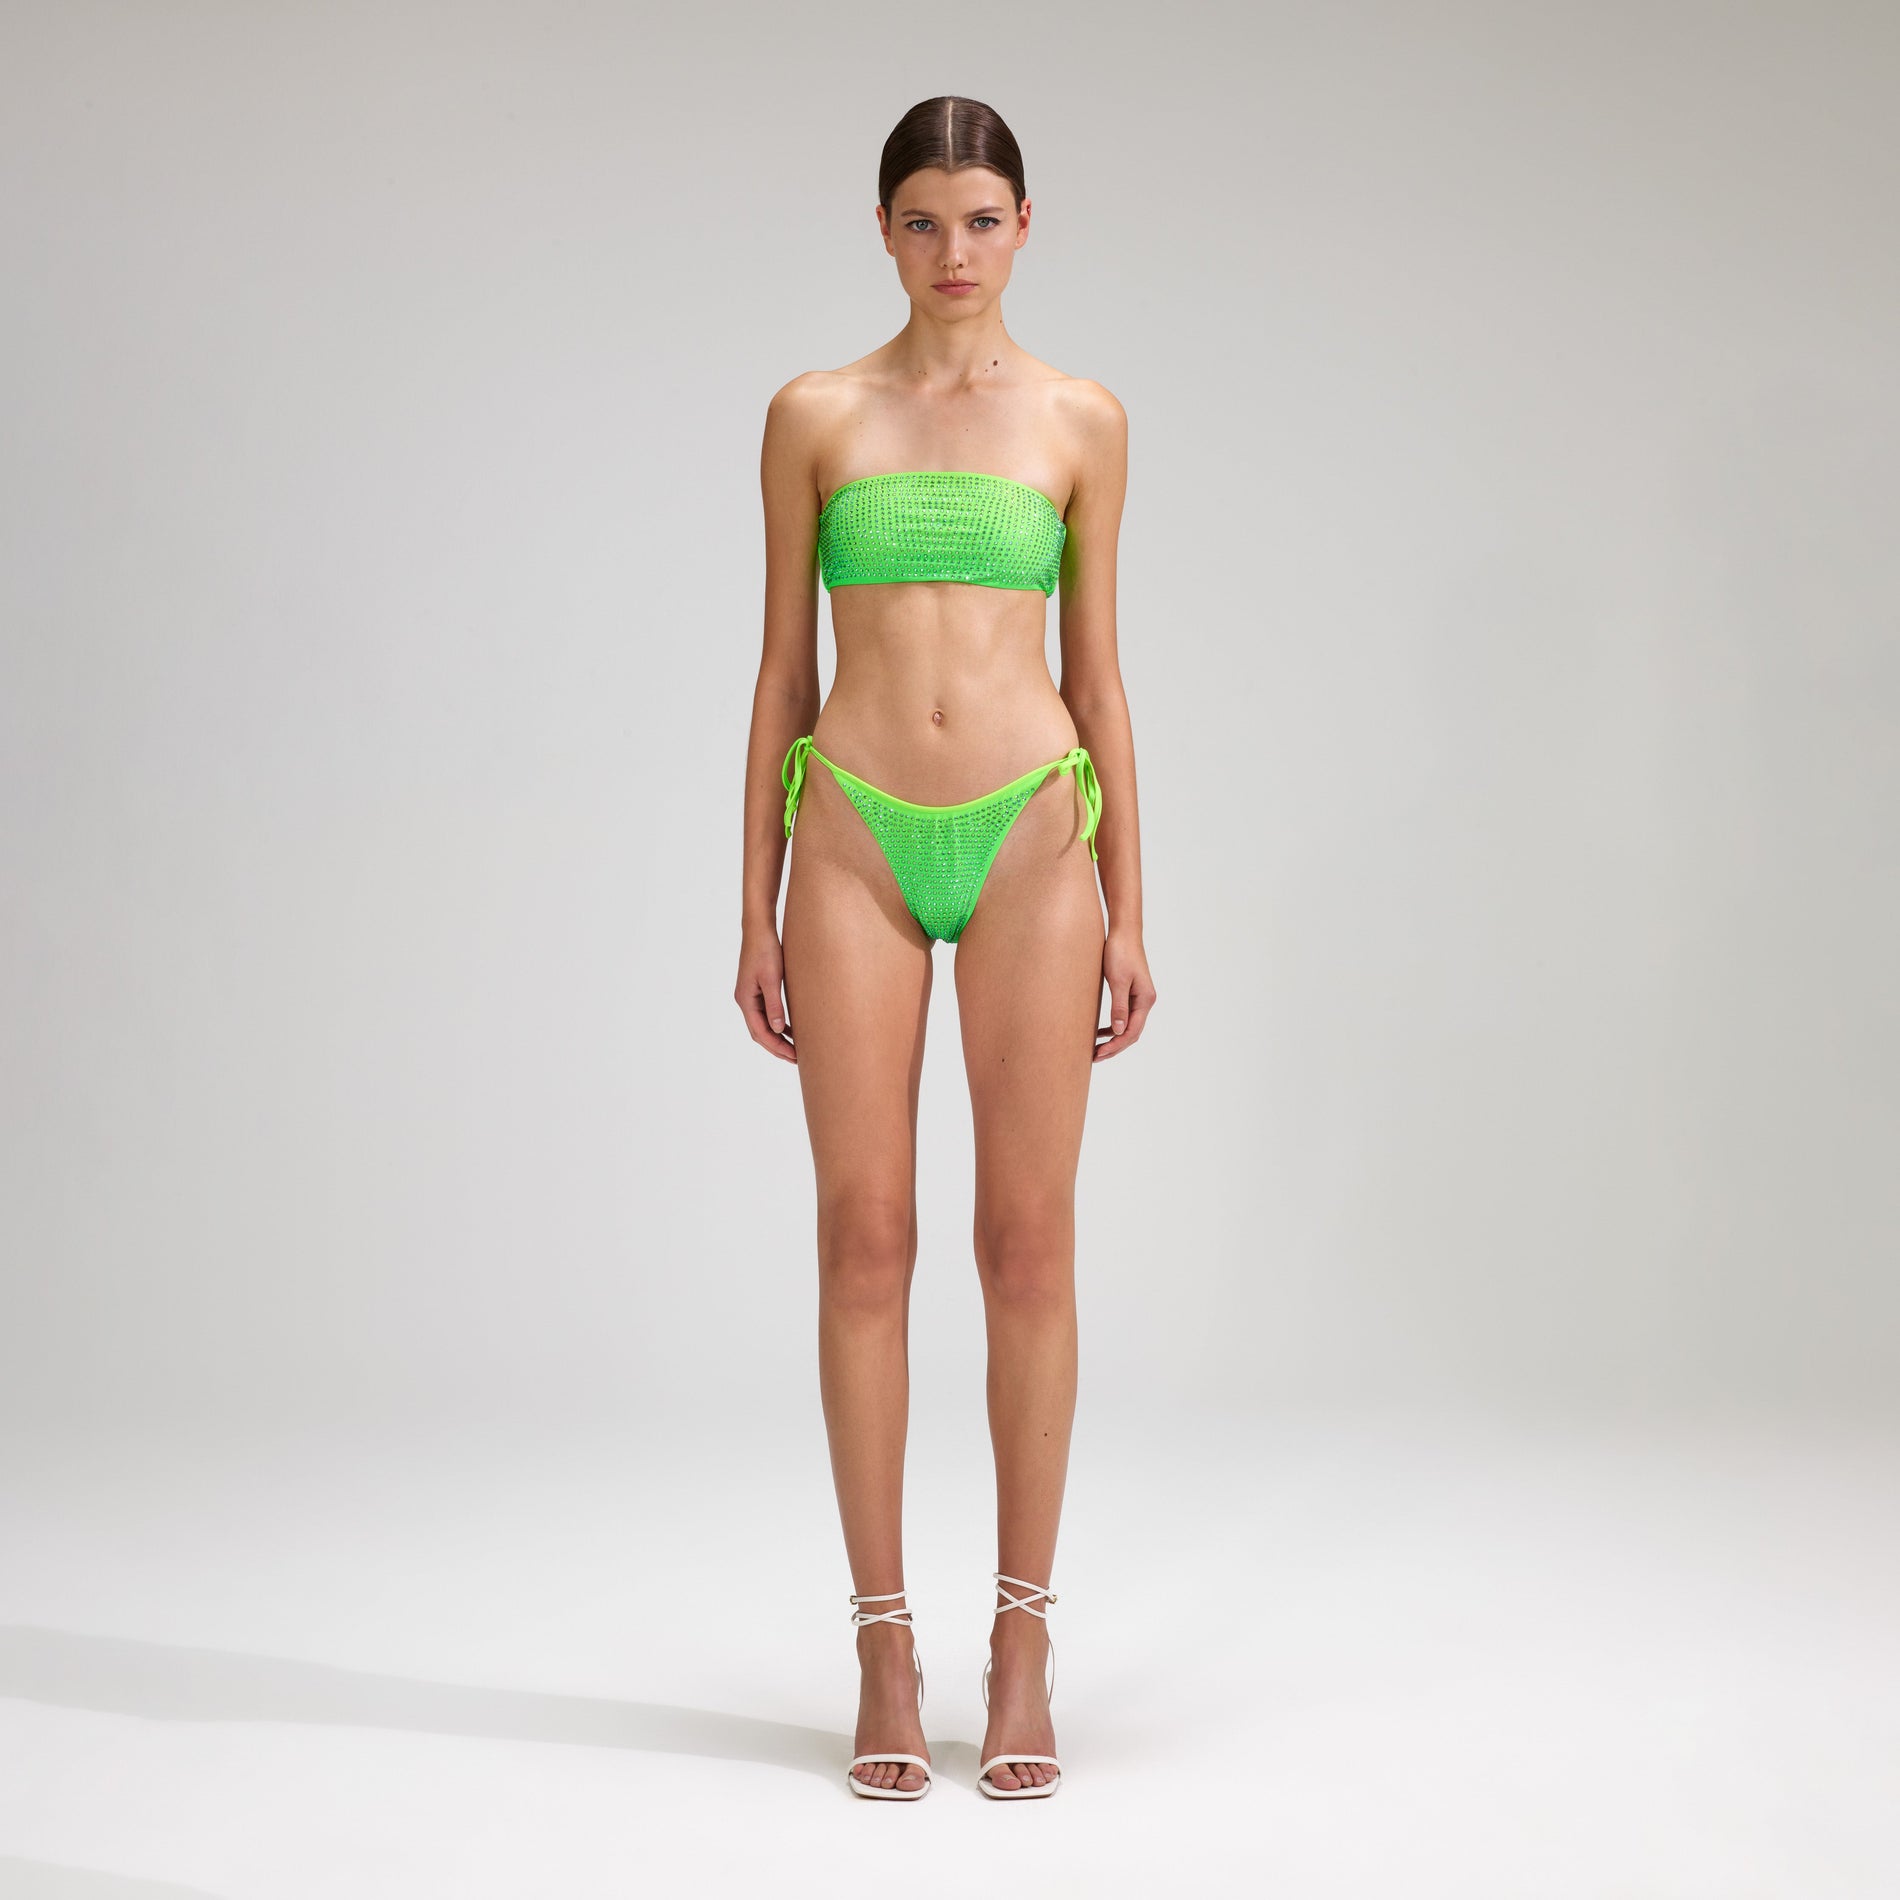 A woman wearing the Green Rhinestone Tie Side Bikini Brief